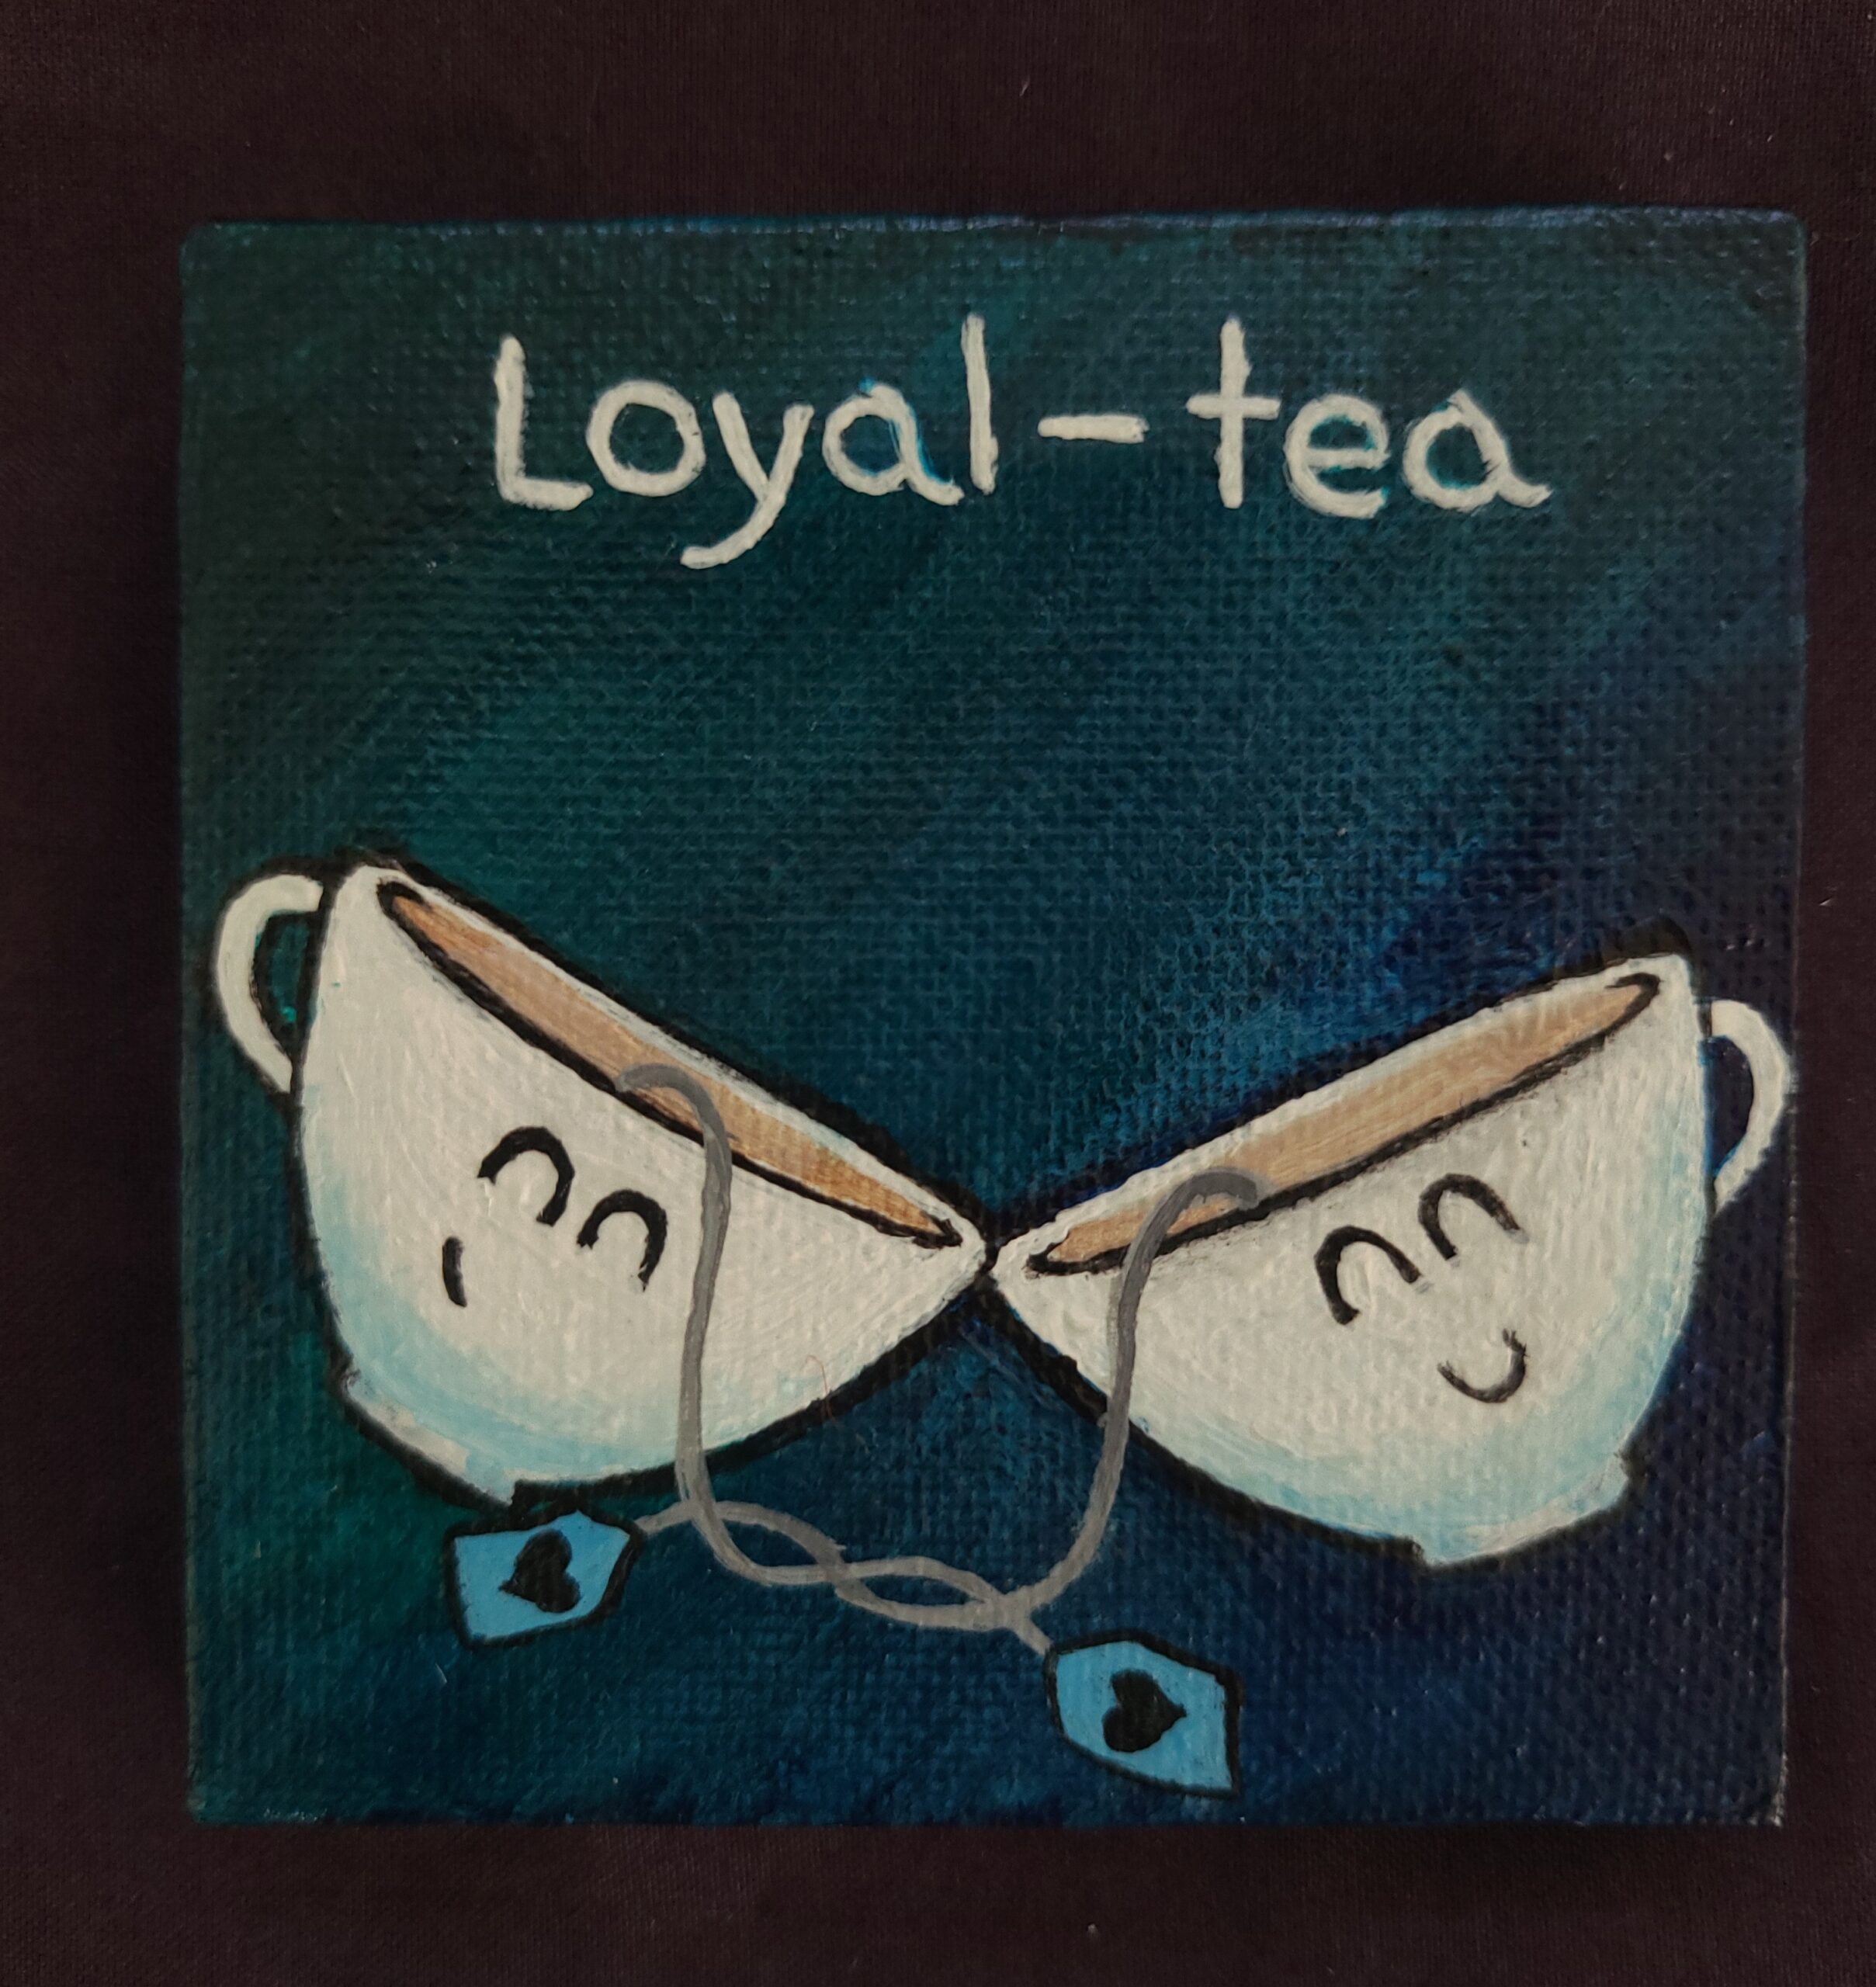 Loyal-tea – $15